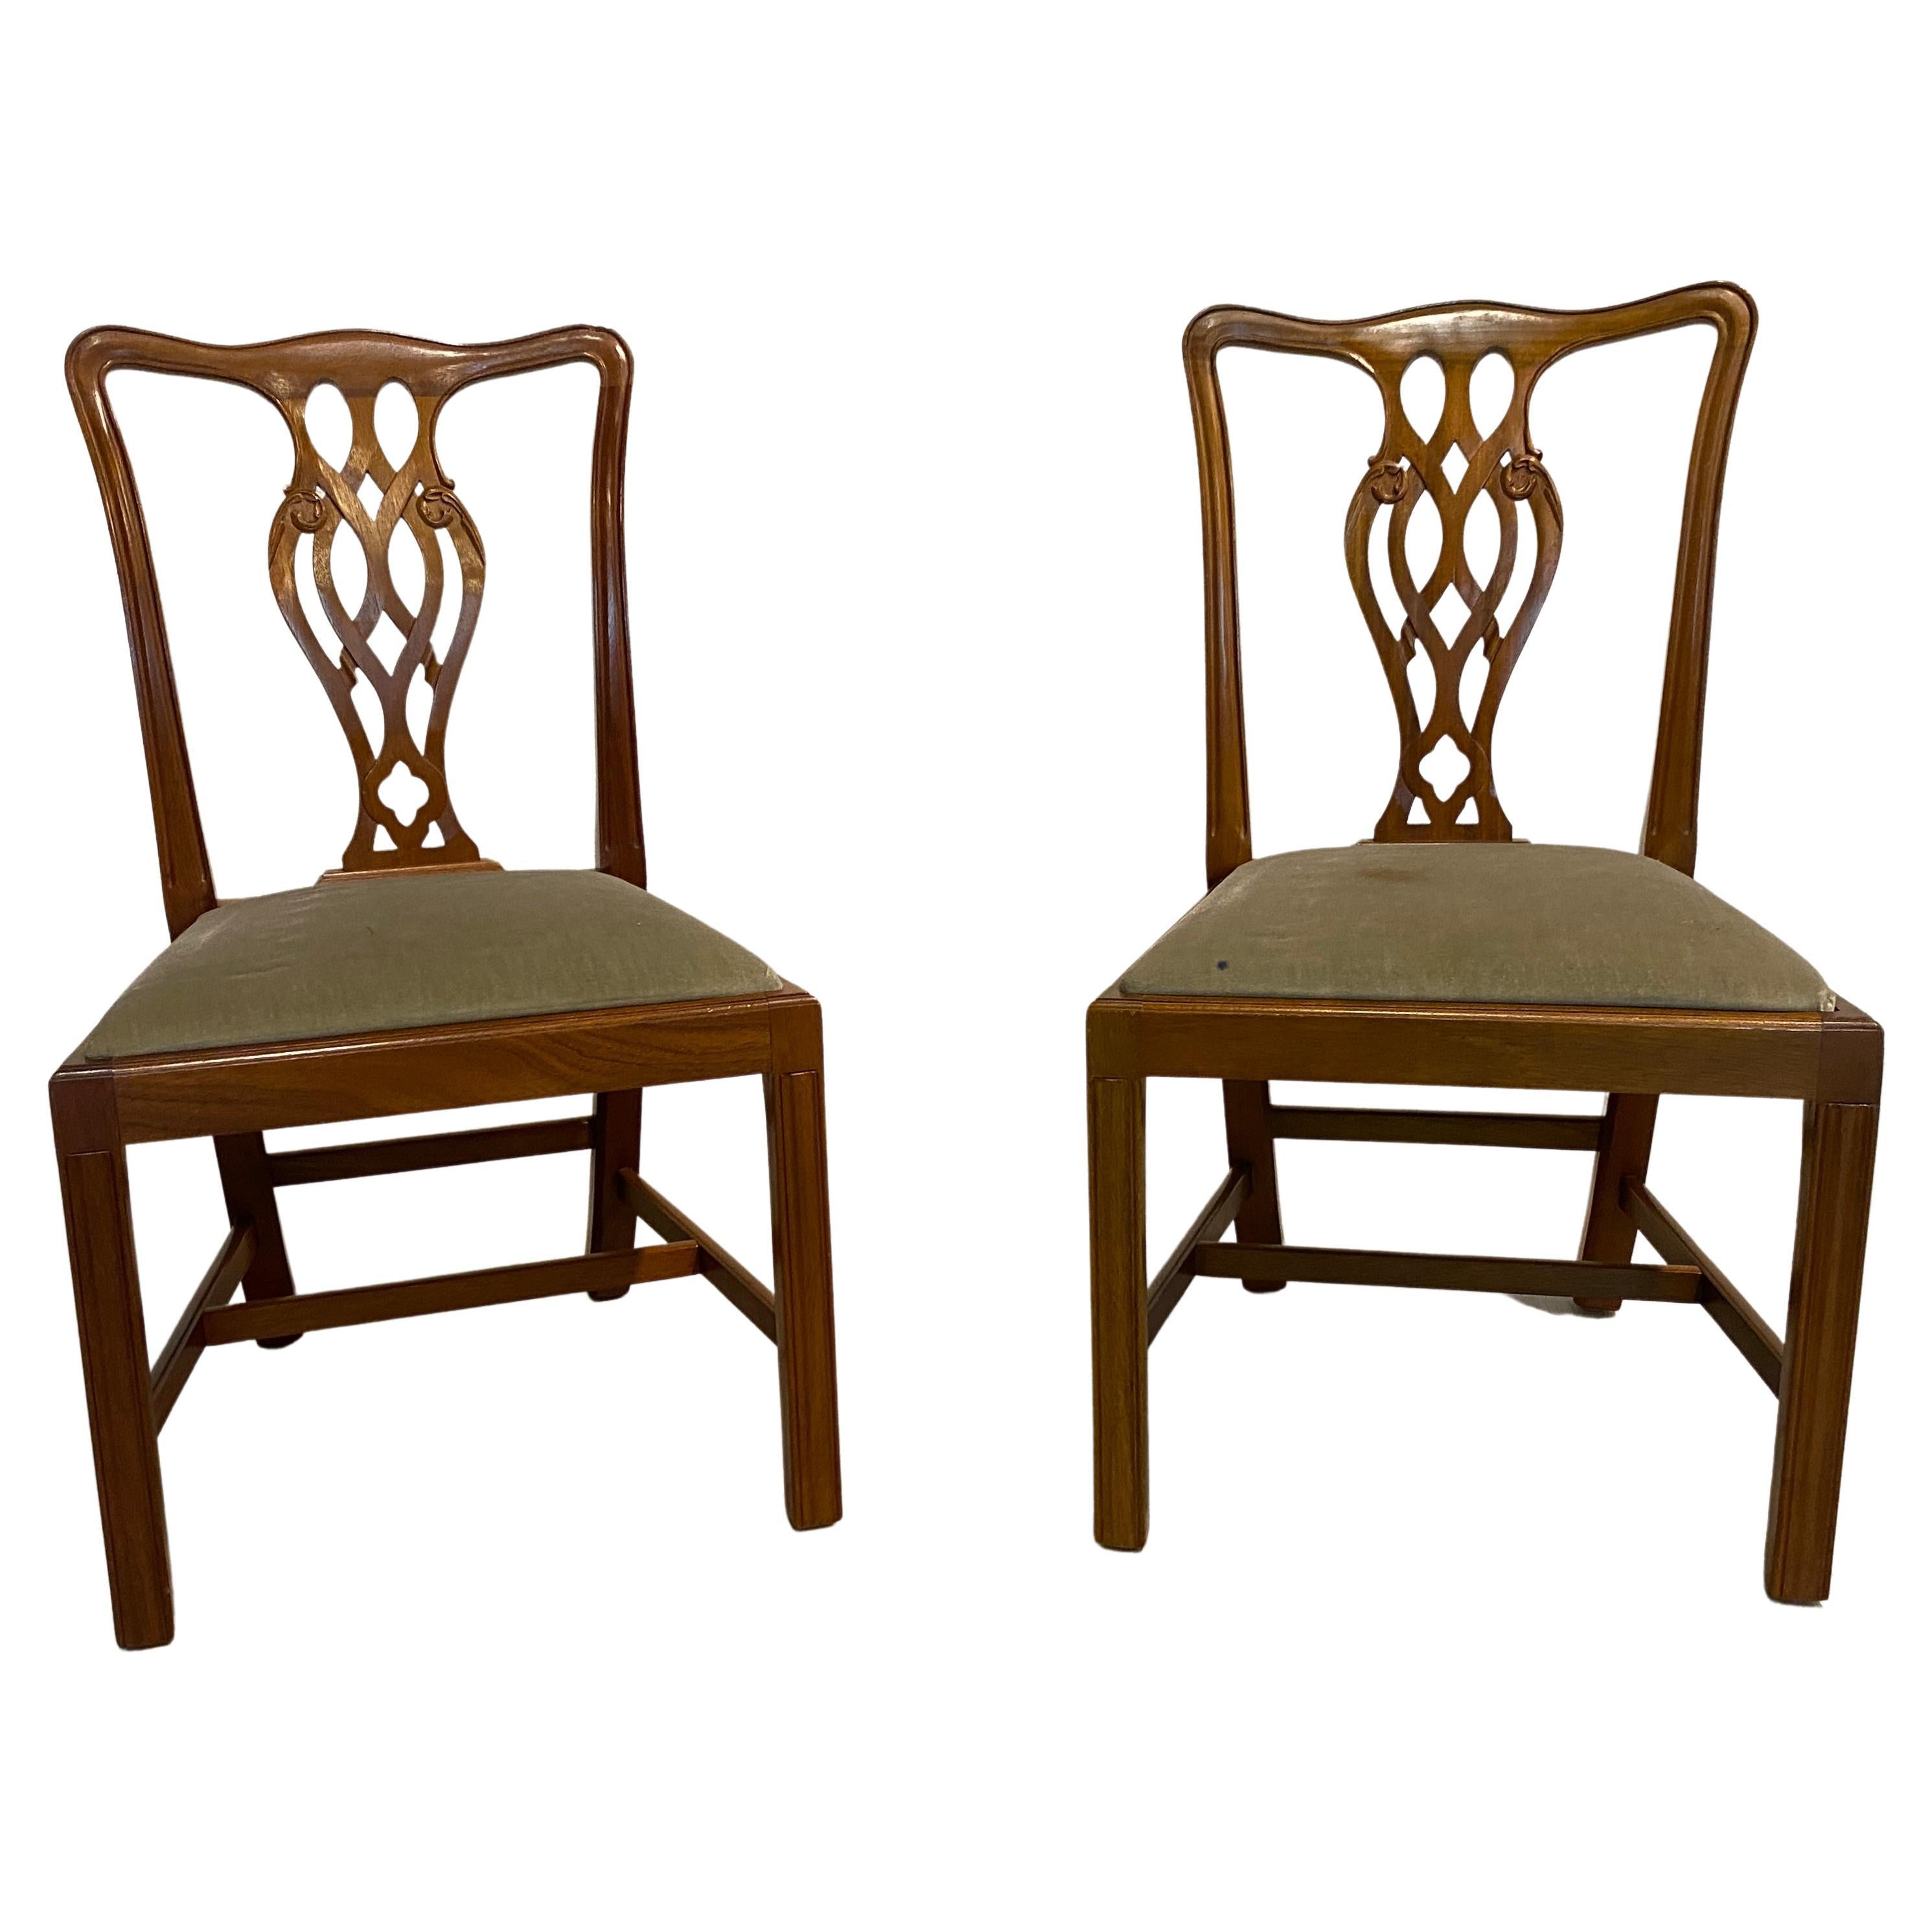 Esszimmerstühle, Mahagoni, georgianischer Stil, hergestellt in England, zwei Stühle ohne Armlehne im Angebot